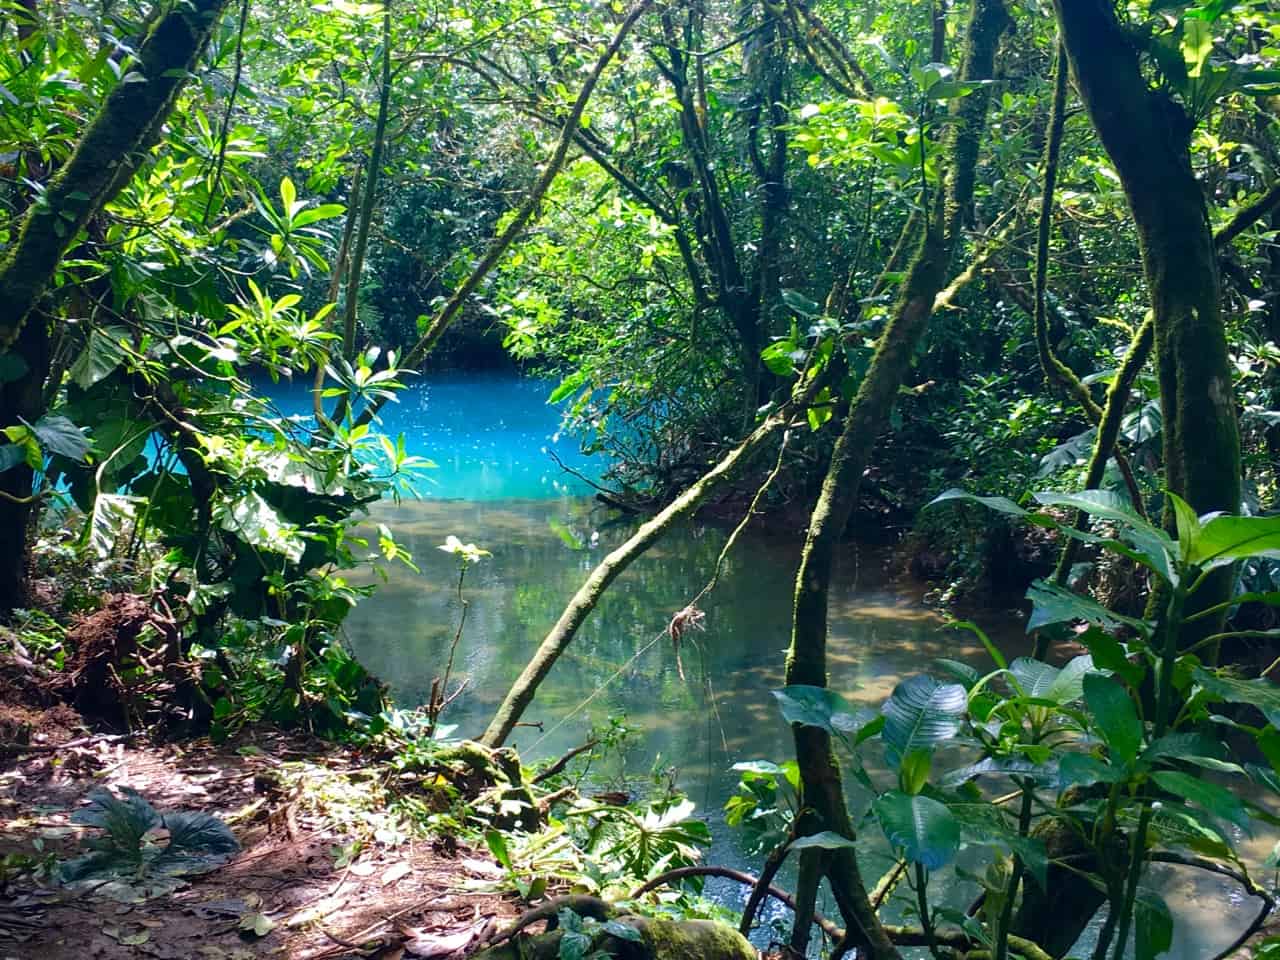  Los Teñidores au Costa Rica, où deux rivières d'eau claire se rencontrent et l'une devient bleue.